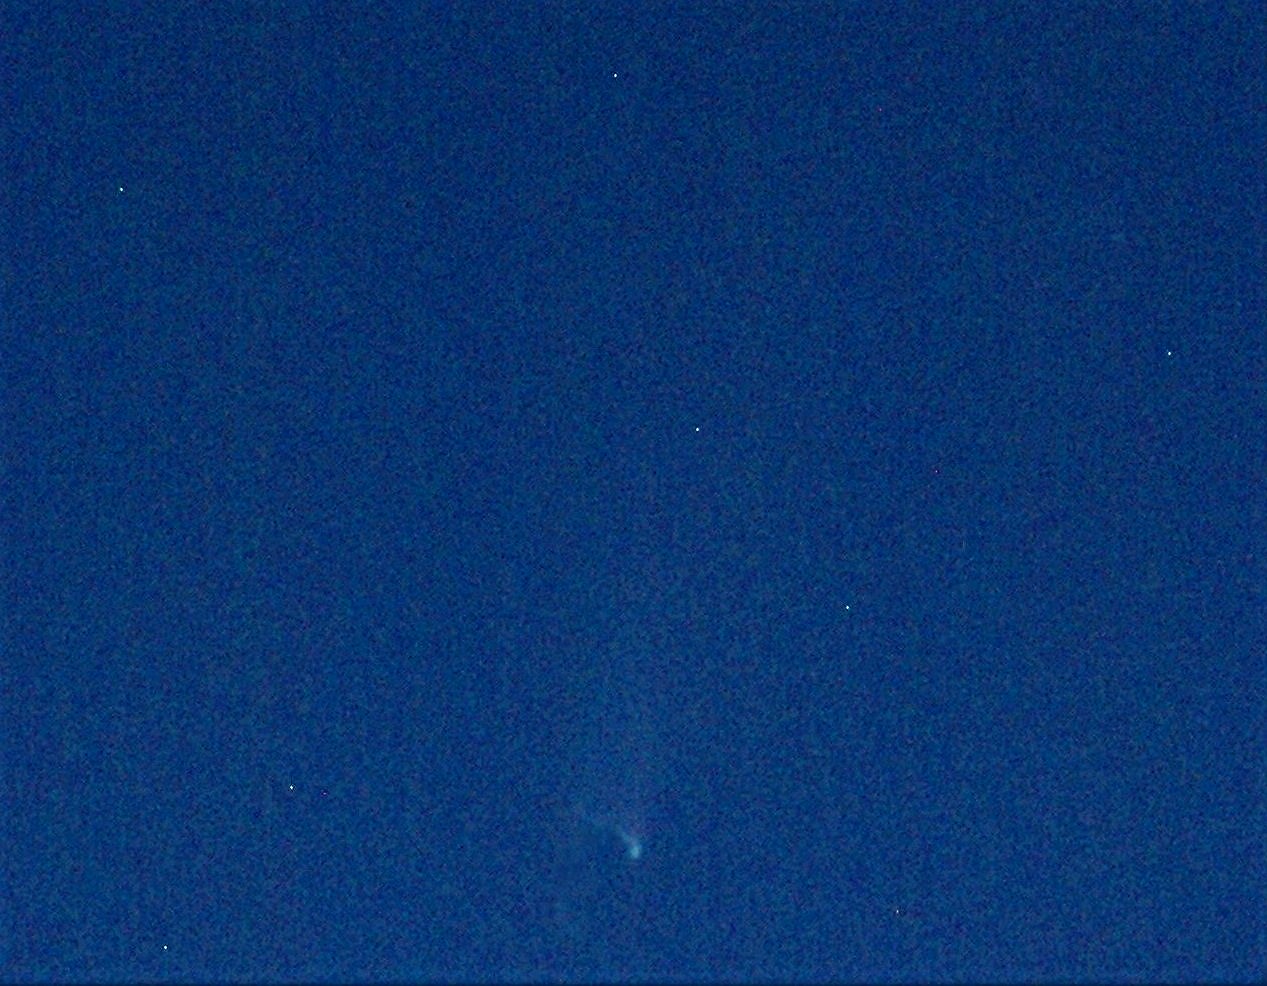 Comet Neowise.JPG